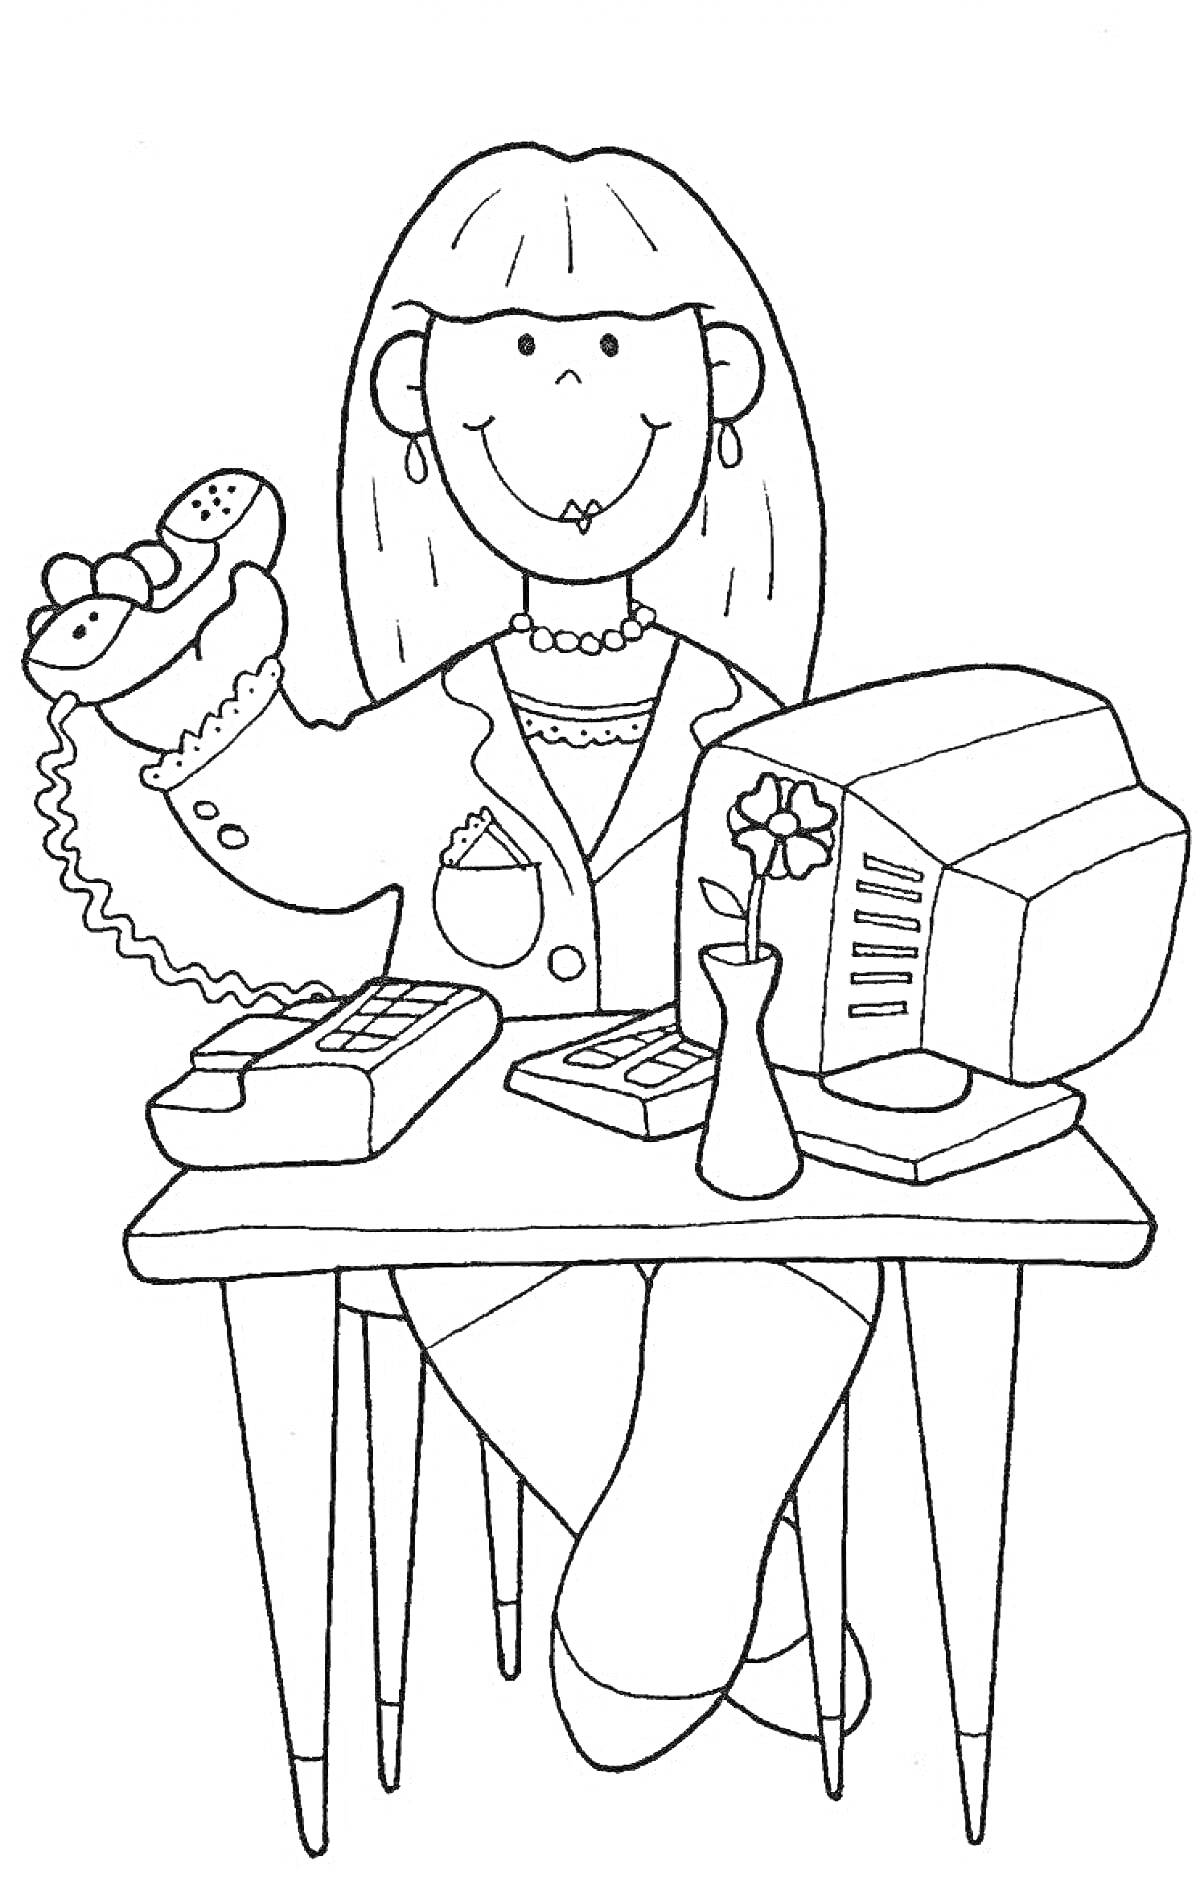 РаскраскаСекретарь: женщина с телефоном, компьютер, цветок в вазе, документы, стол